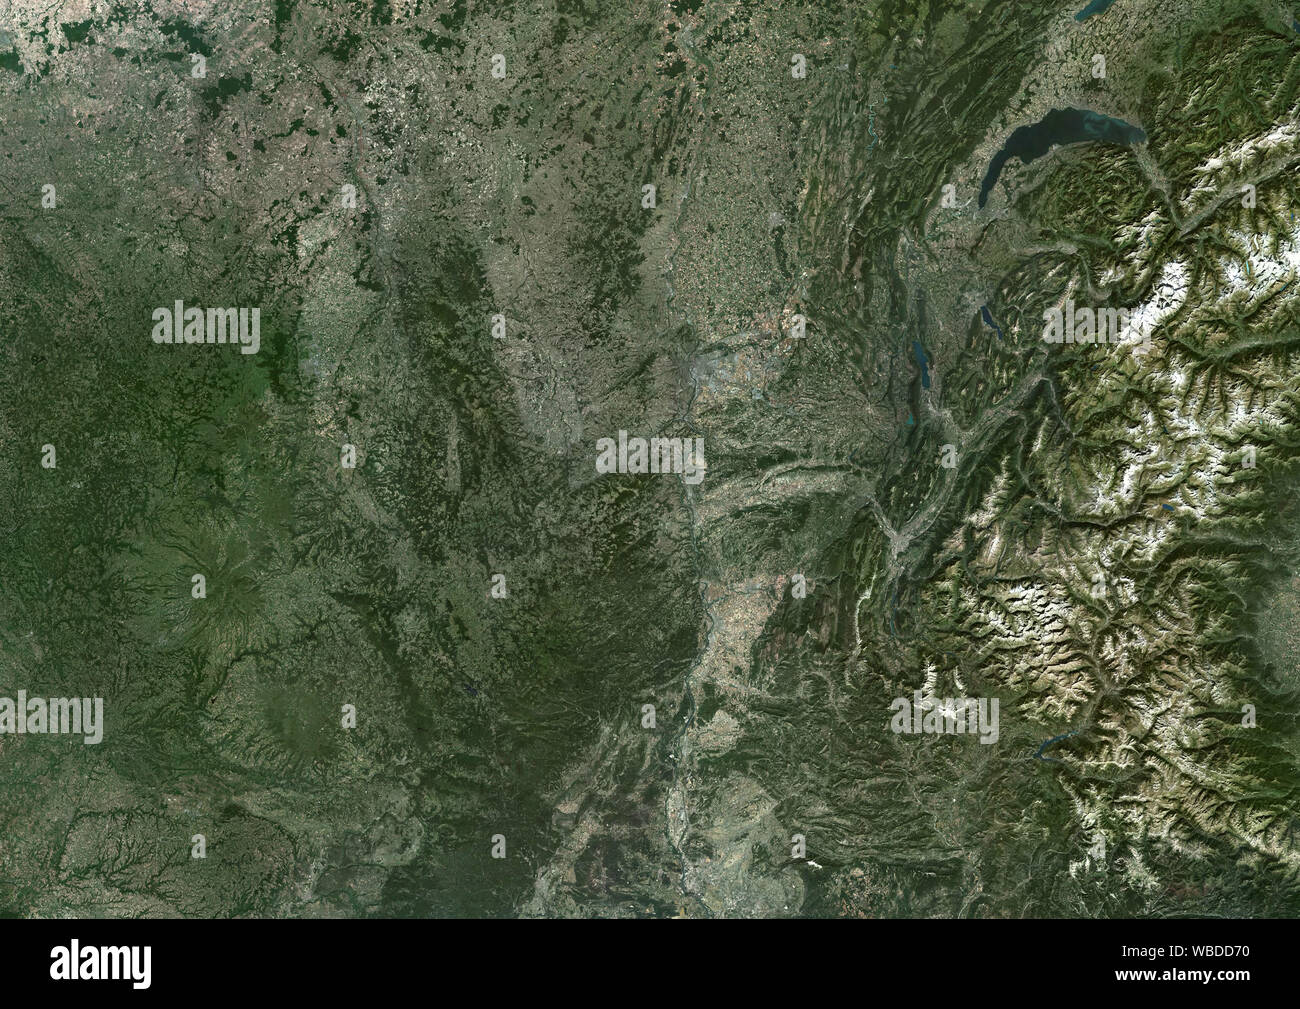 Imagen de satélite de la Color Auvergne-Rhone-Alpes en el sudeste de Francia central. Esta imagen fue compilado a partir de los datos obtenidos en 2018 por satélites Sentinel-2. Foto de stock